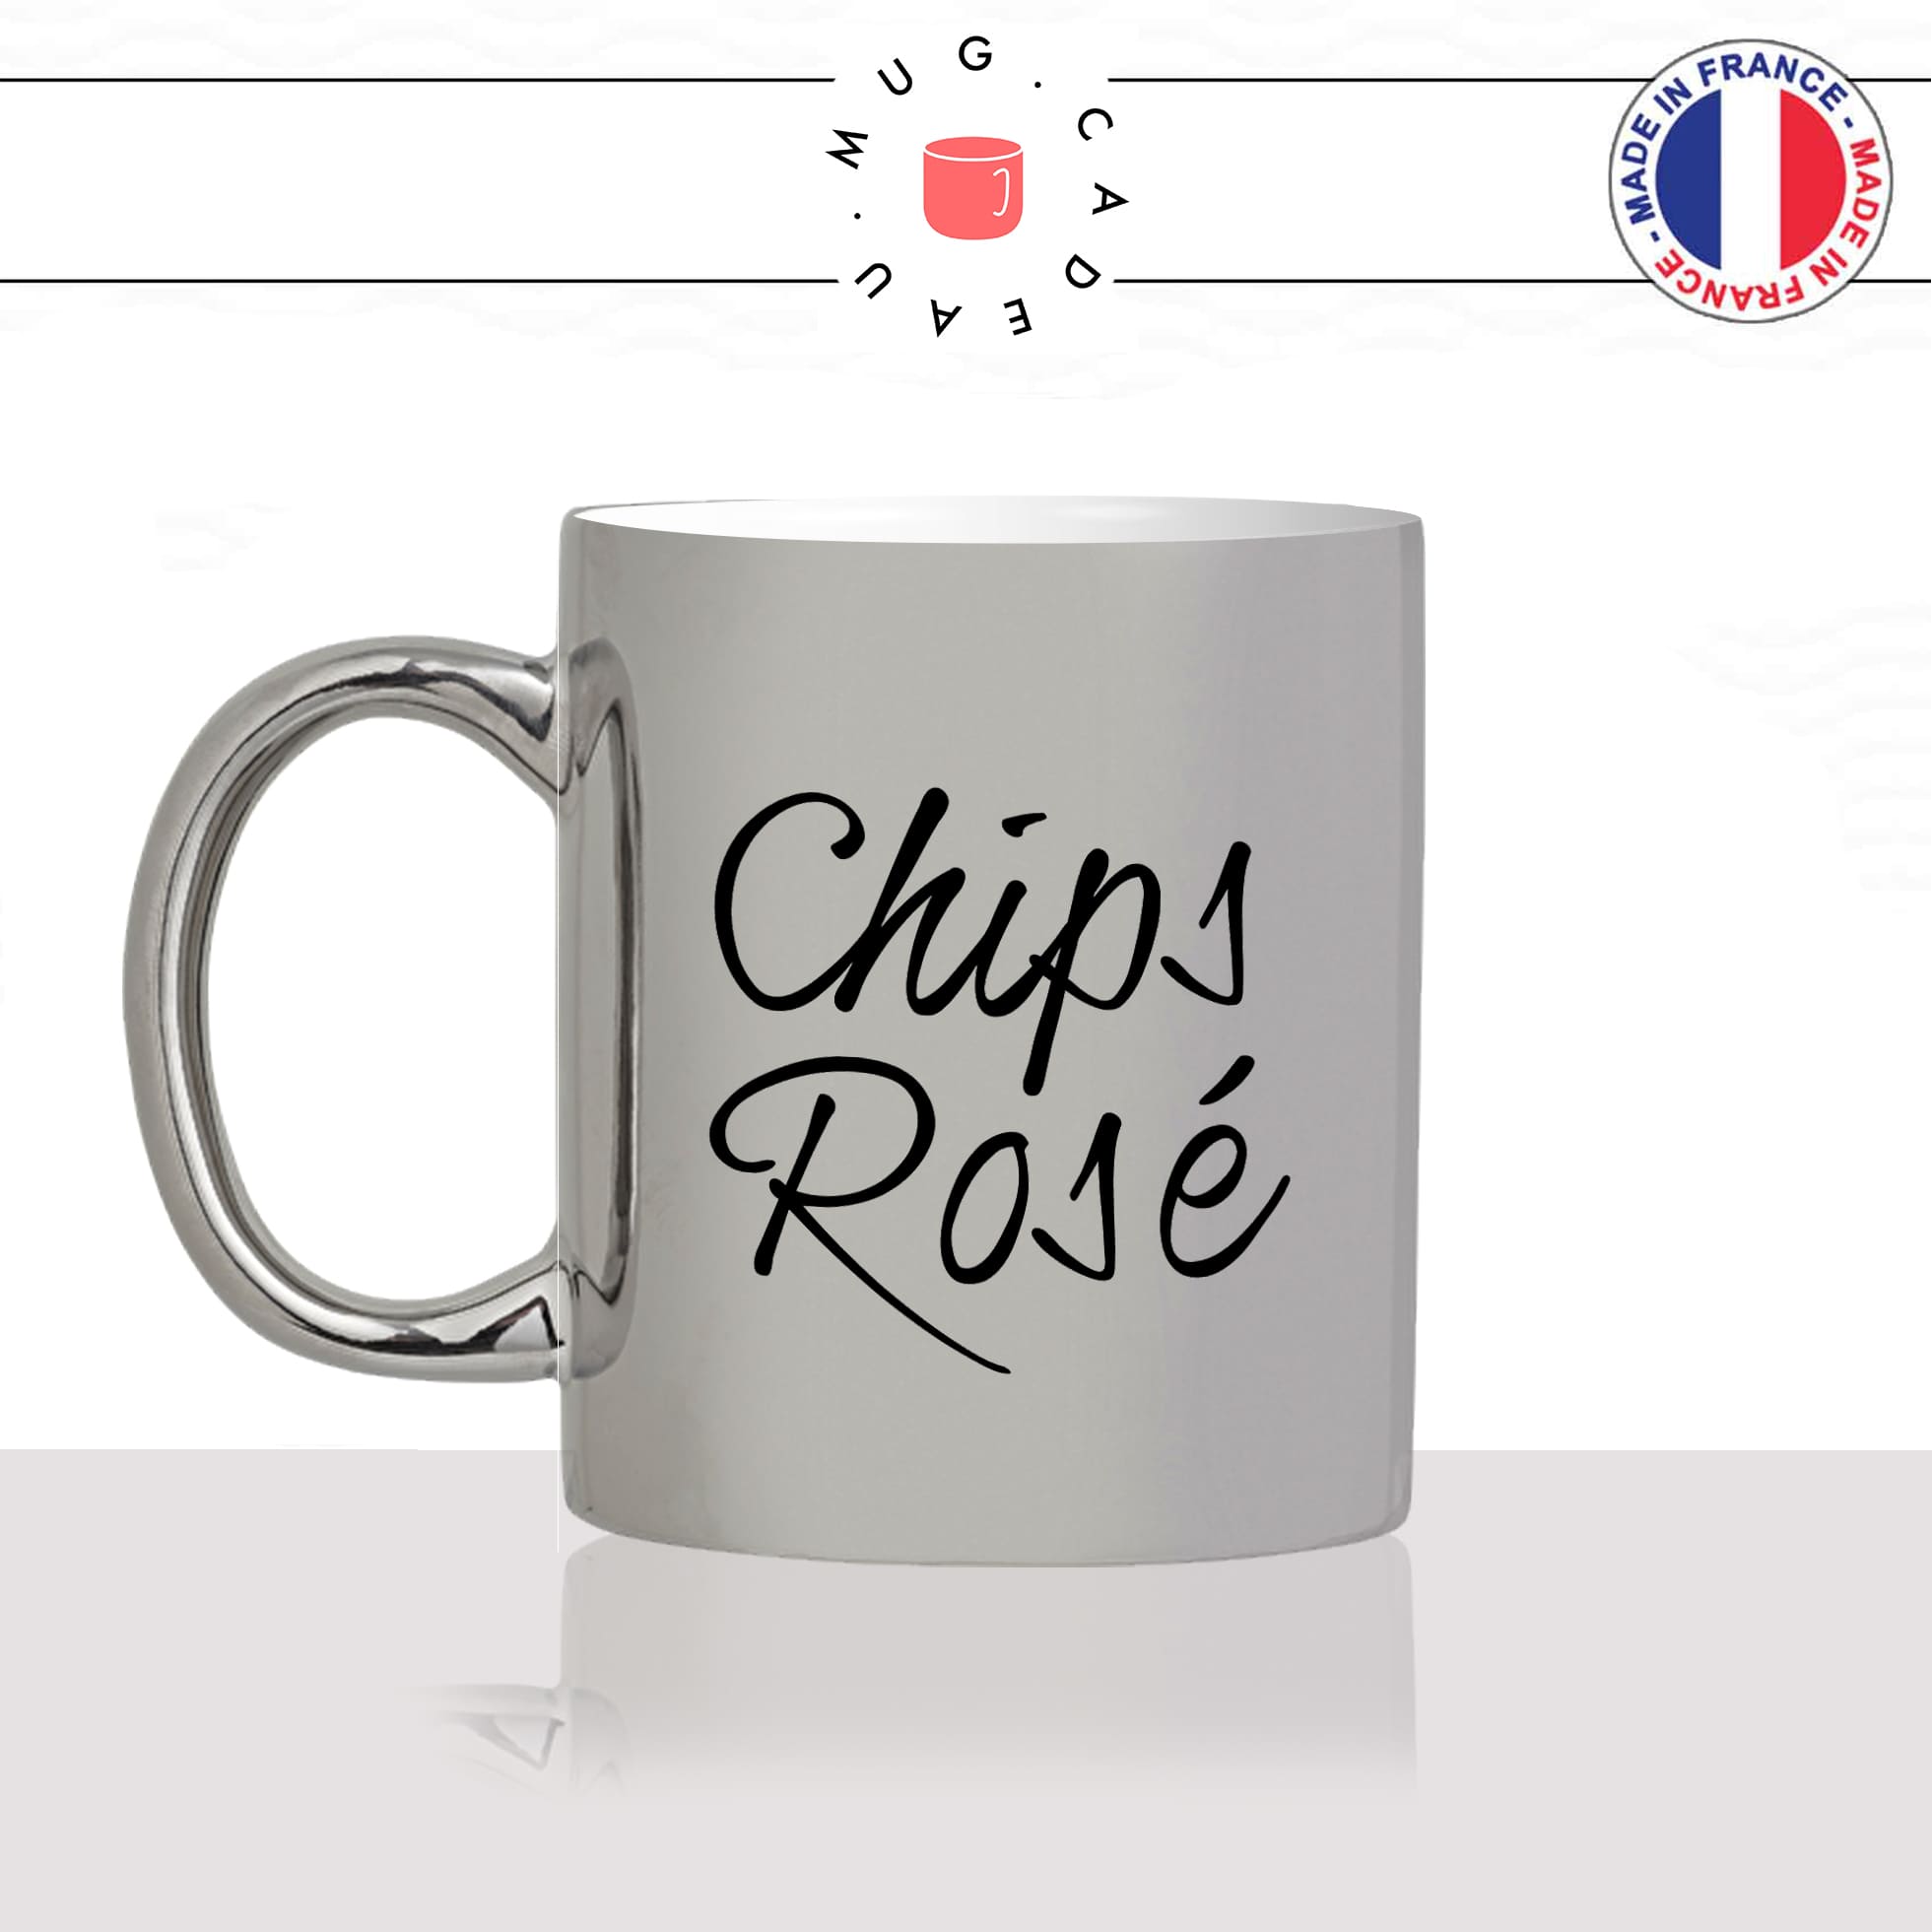 mug-tasse-argenté-argent-gris-silver-chips-rosé-apéro-saucisson-vin-biere-homme-femme-humour-fun-cool-idée-cadeau-original-personnalisé